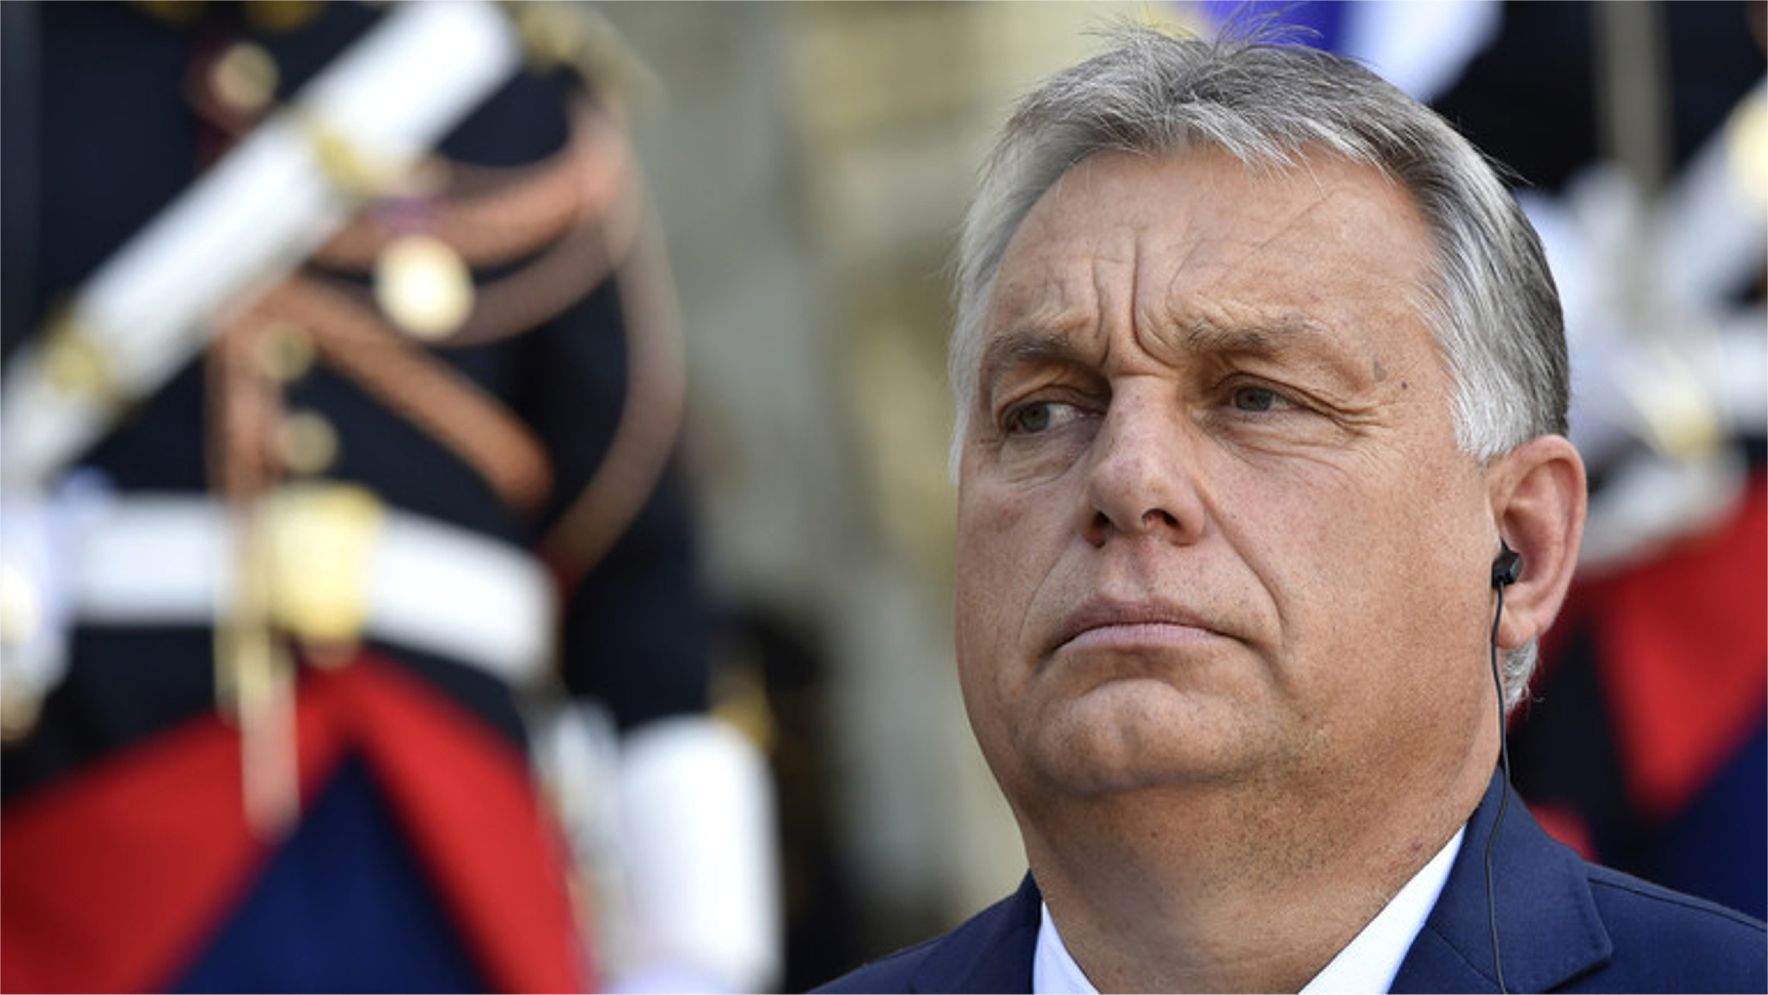 Svet zúfalo potrebuje silných vodcov – Orbán